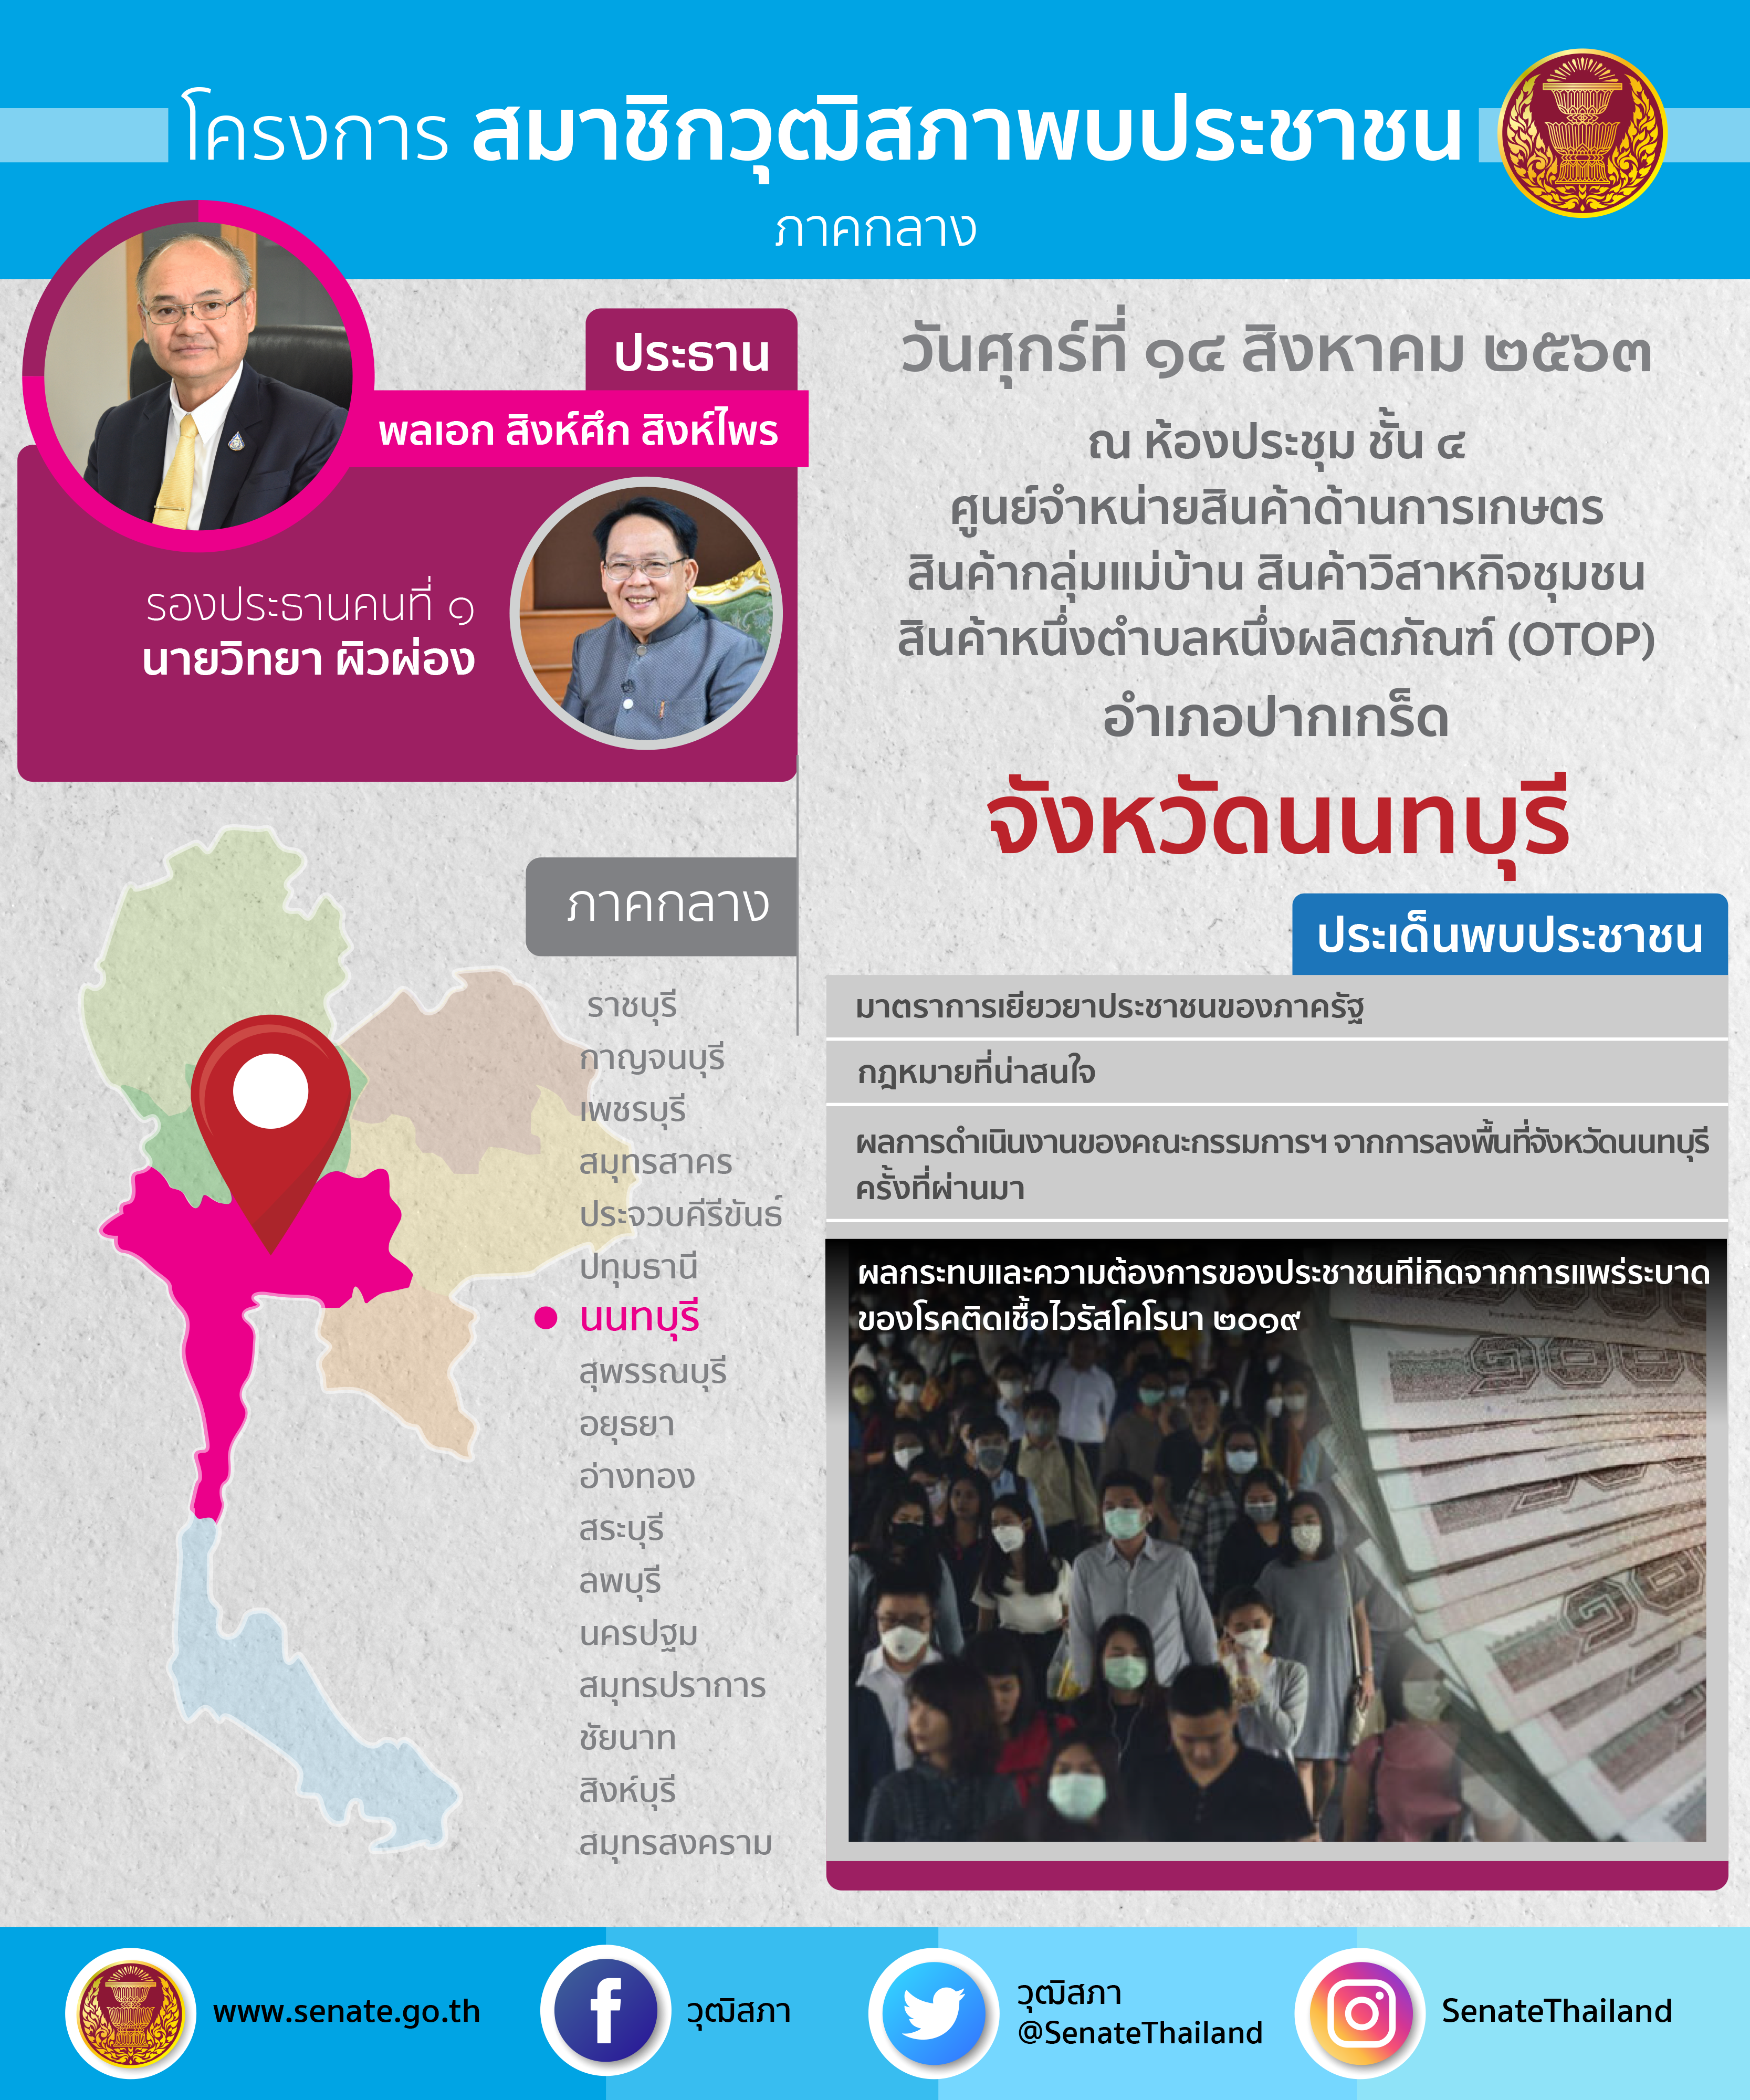 กำหนดการลงพื้นที่พบประชาชน จังหวัดนนทบุรี 14 สิงหาคม 2563 